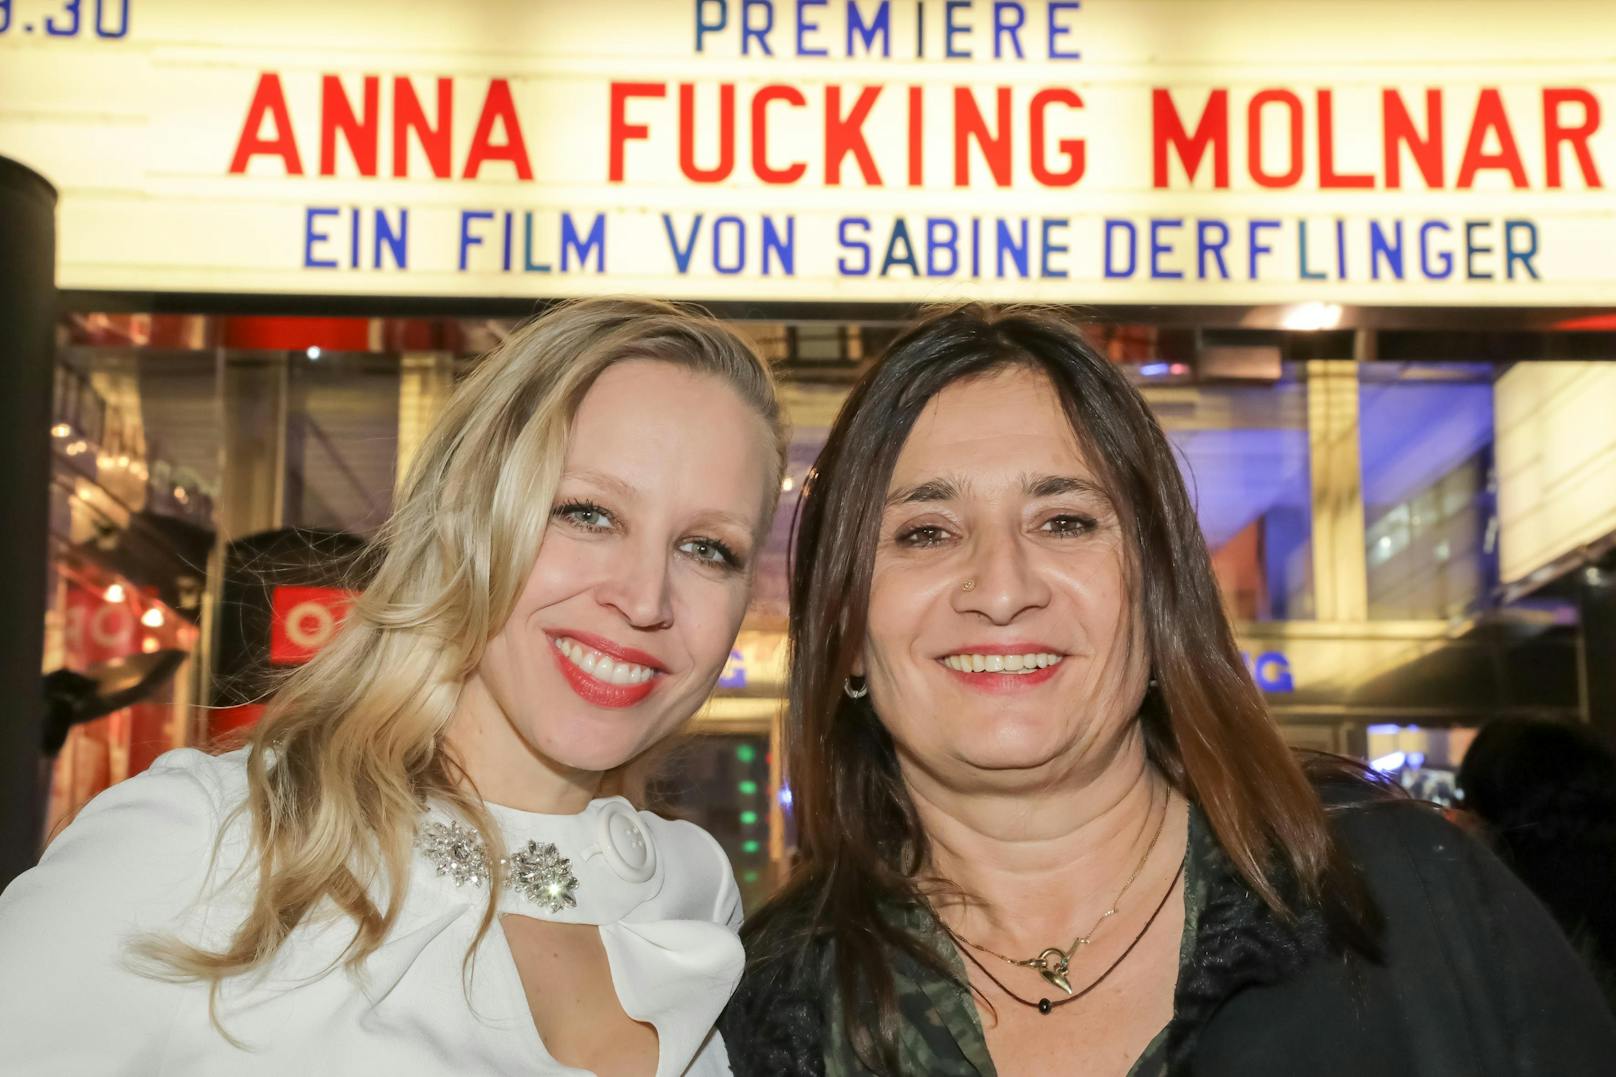 Nina Proll in Premiere von "Anna Fucking Molnar" mit Regisseurin <strong>Sabine Derflinger</strong>, 2017